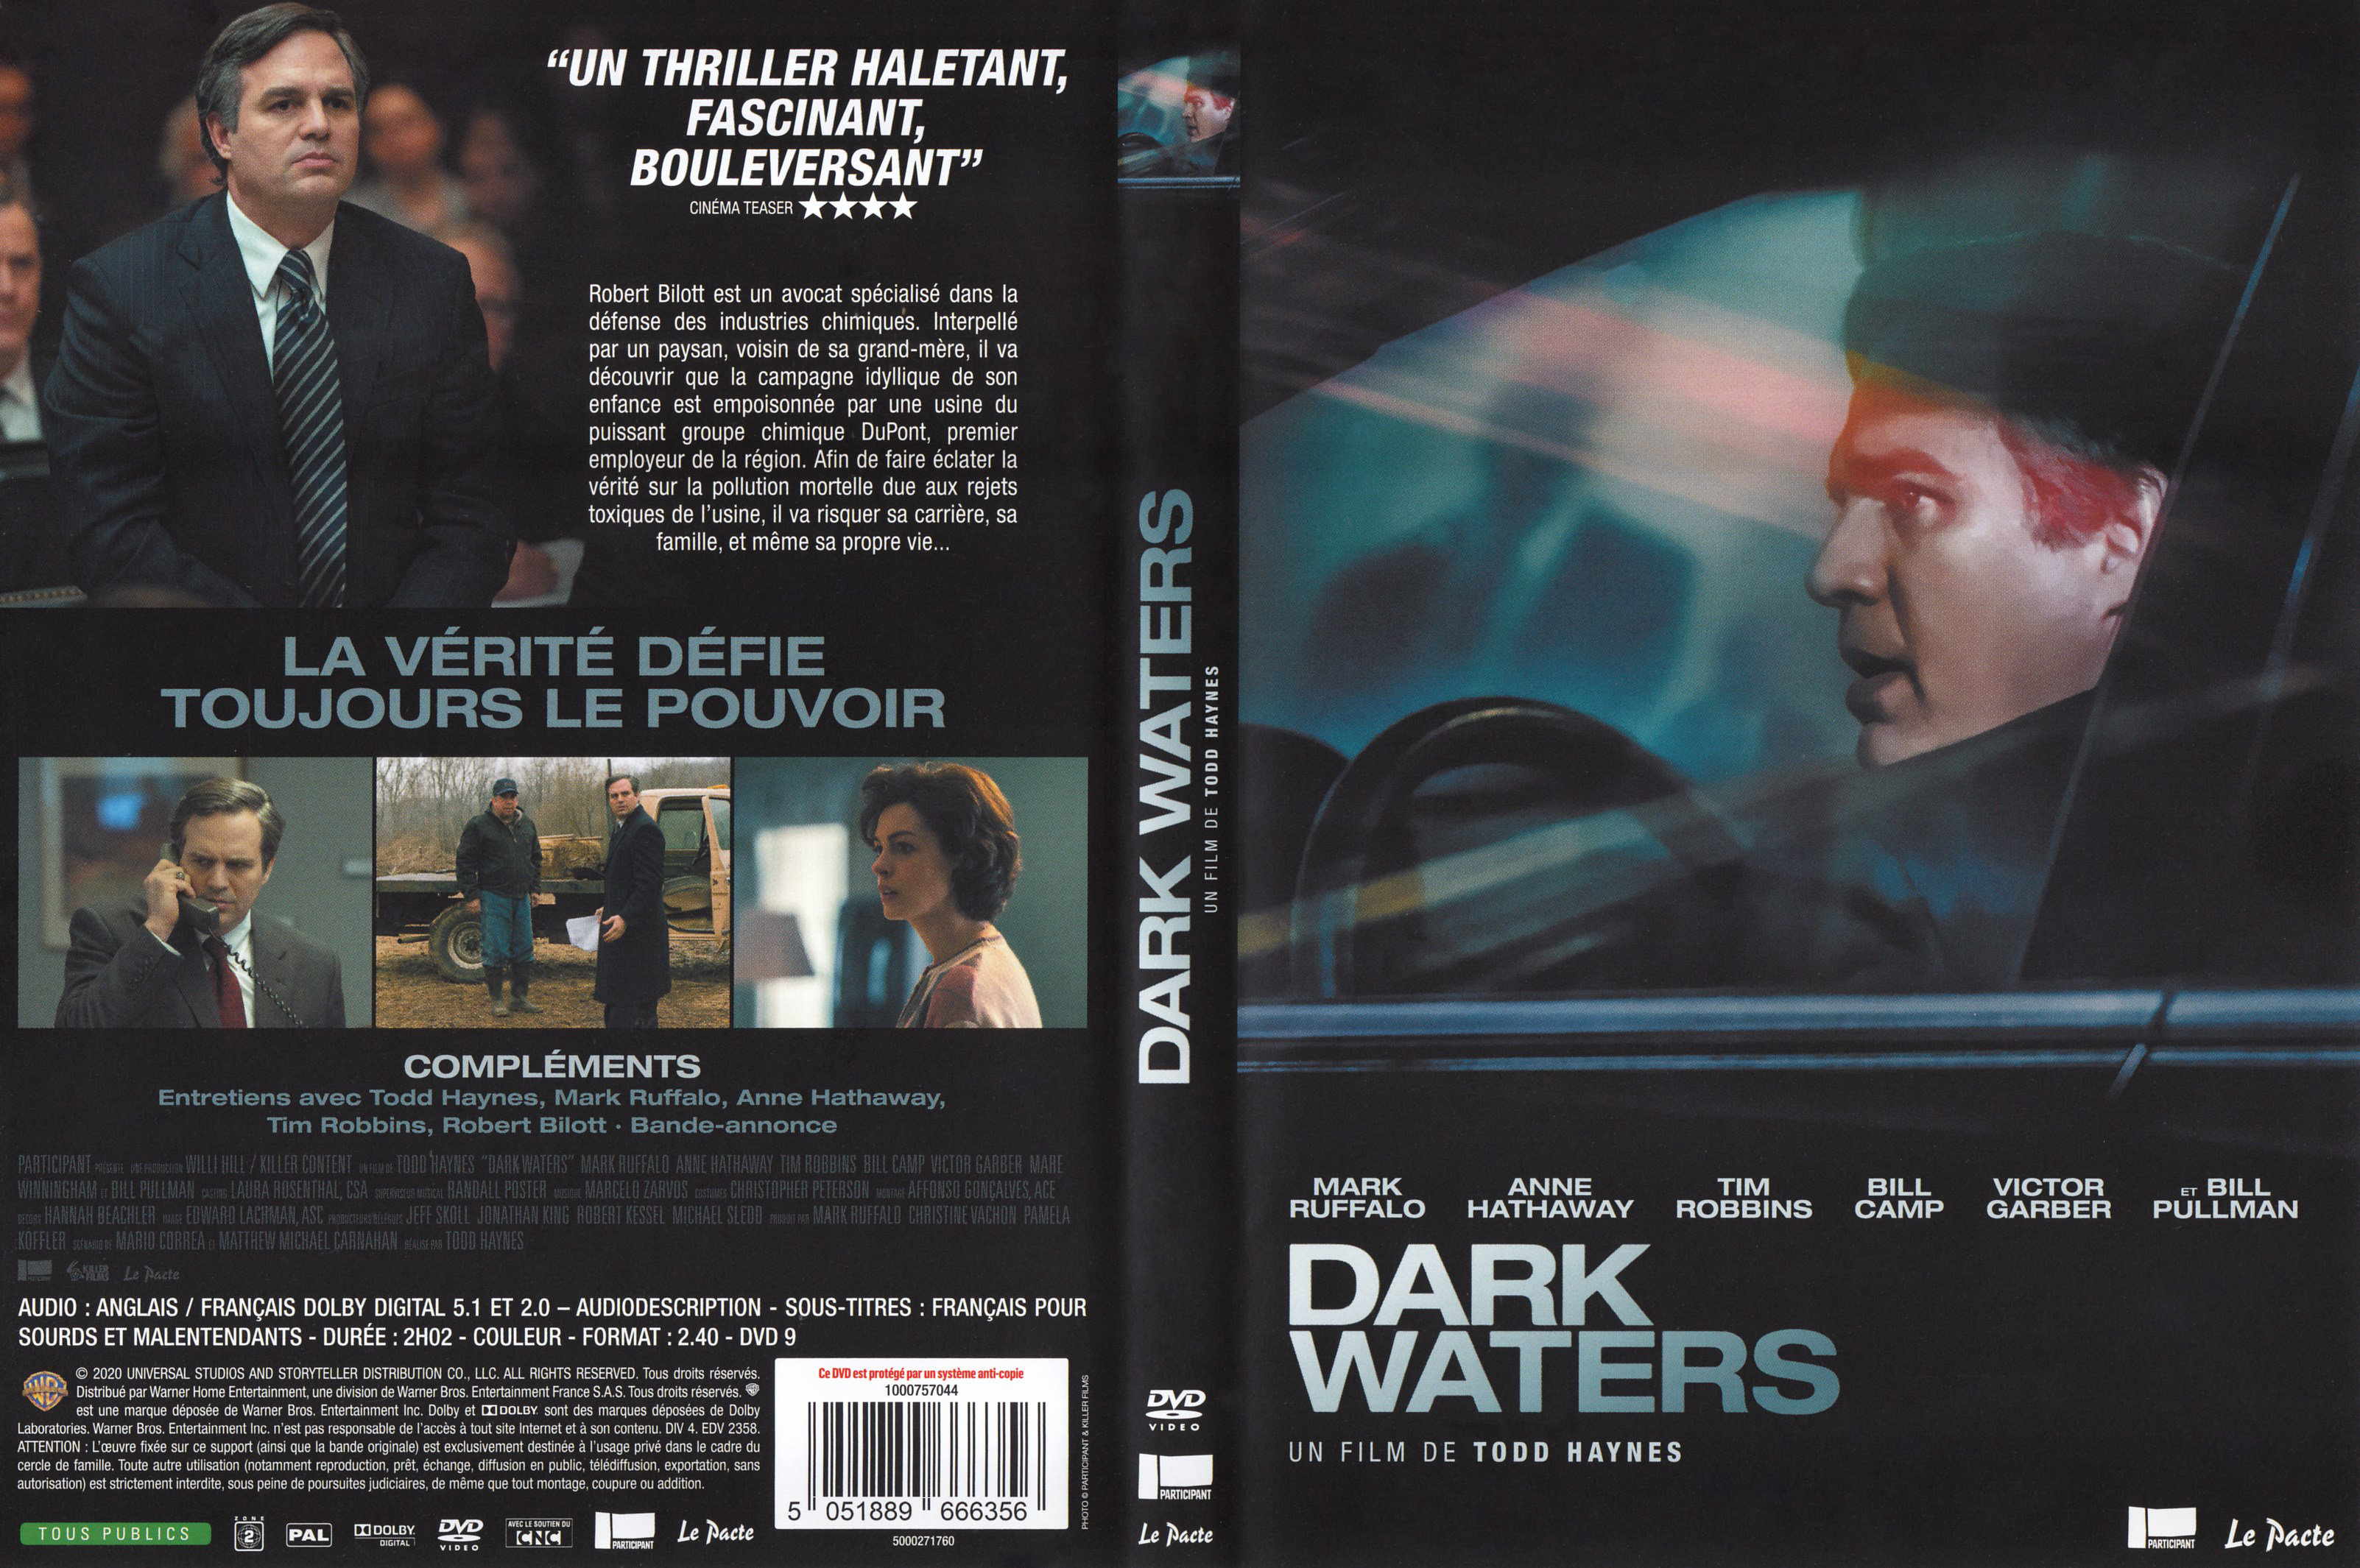 Jaquette DVD Dark waters (2020)